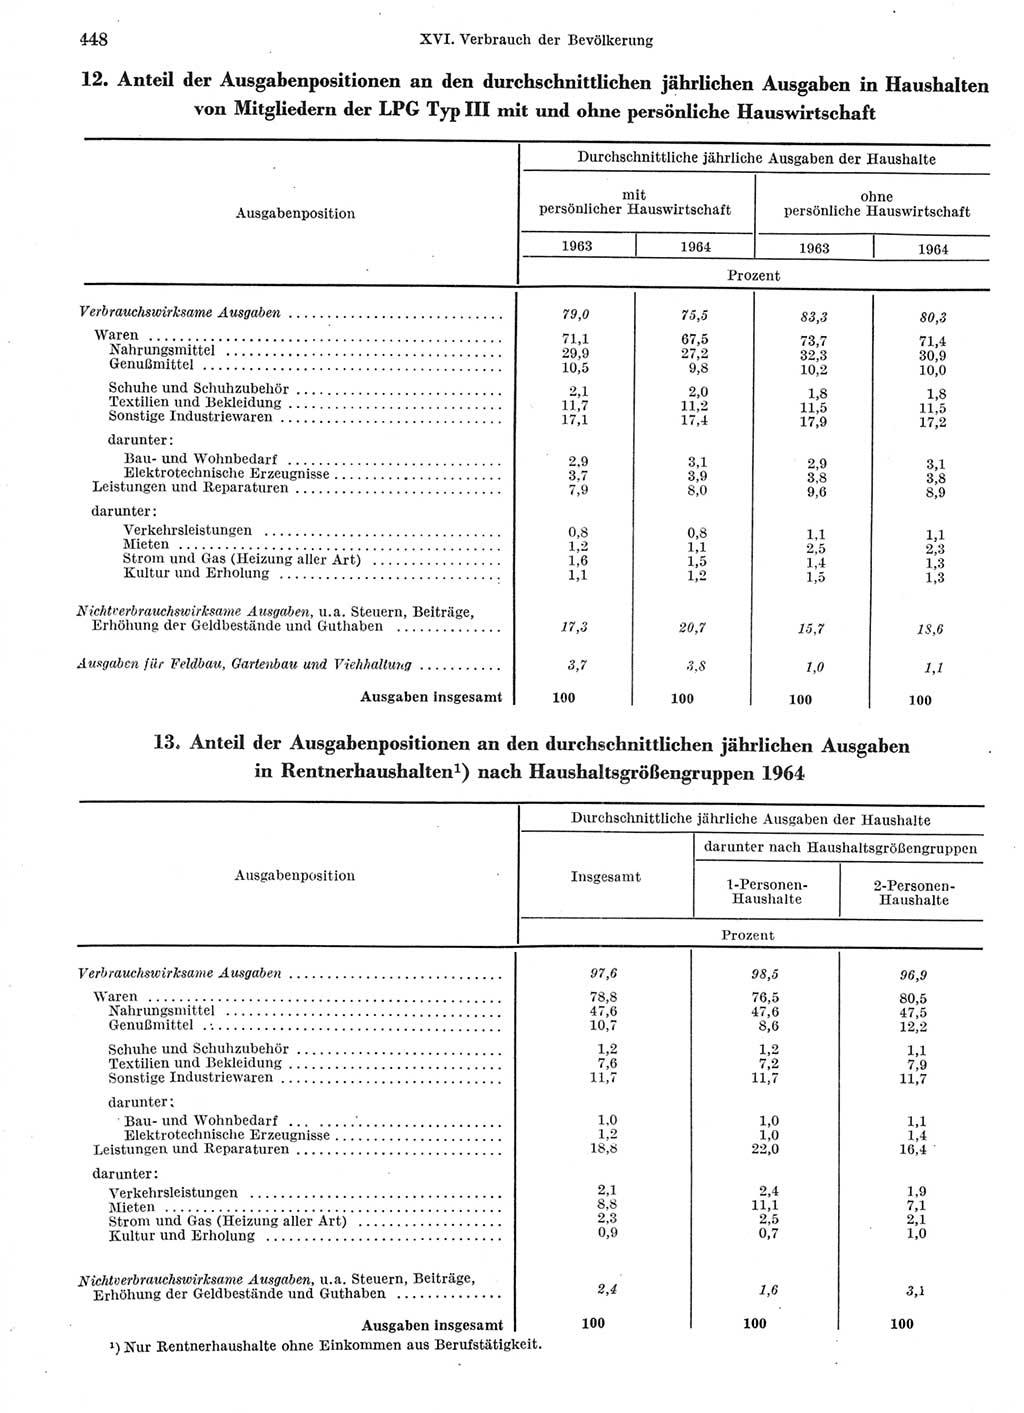 Statistisches Jahrbuch der Deutschen Demokratischen Republik (DDR) 1966, Seite 448 (Stat. Jb. DDR 1966, S. 448)